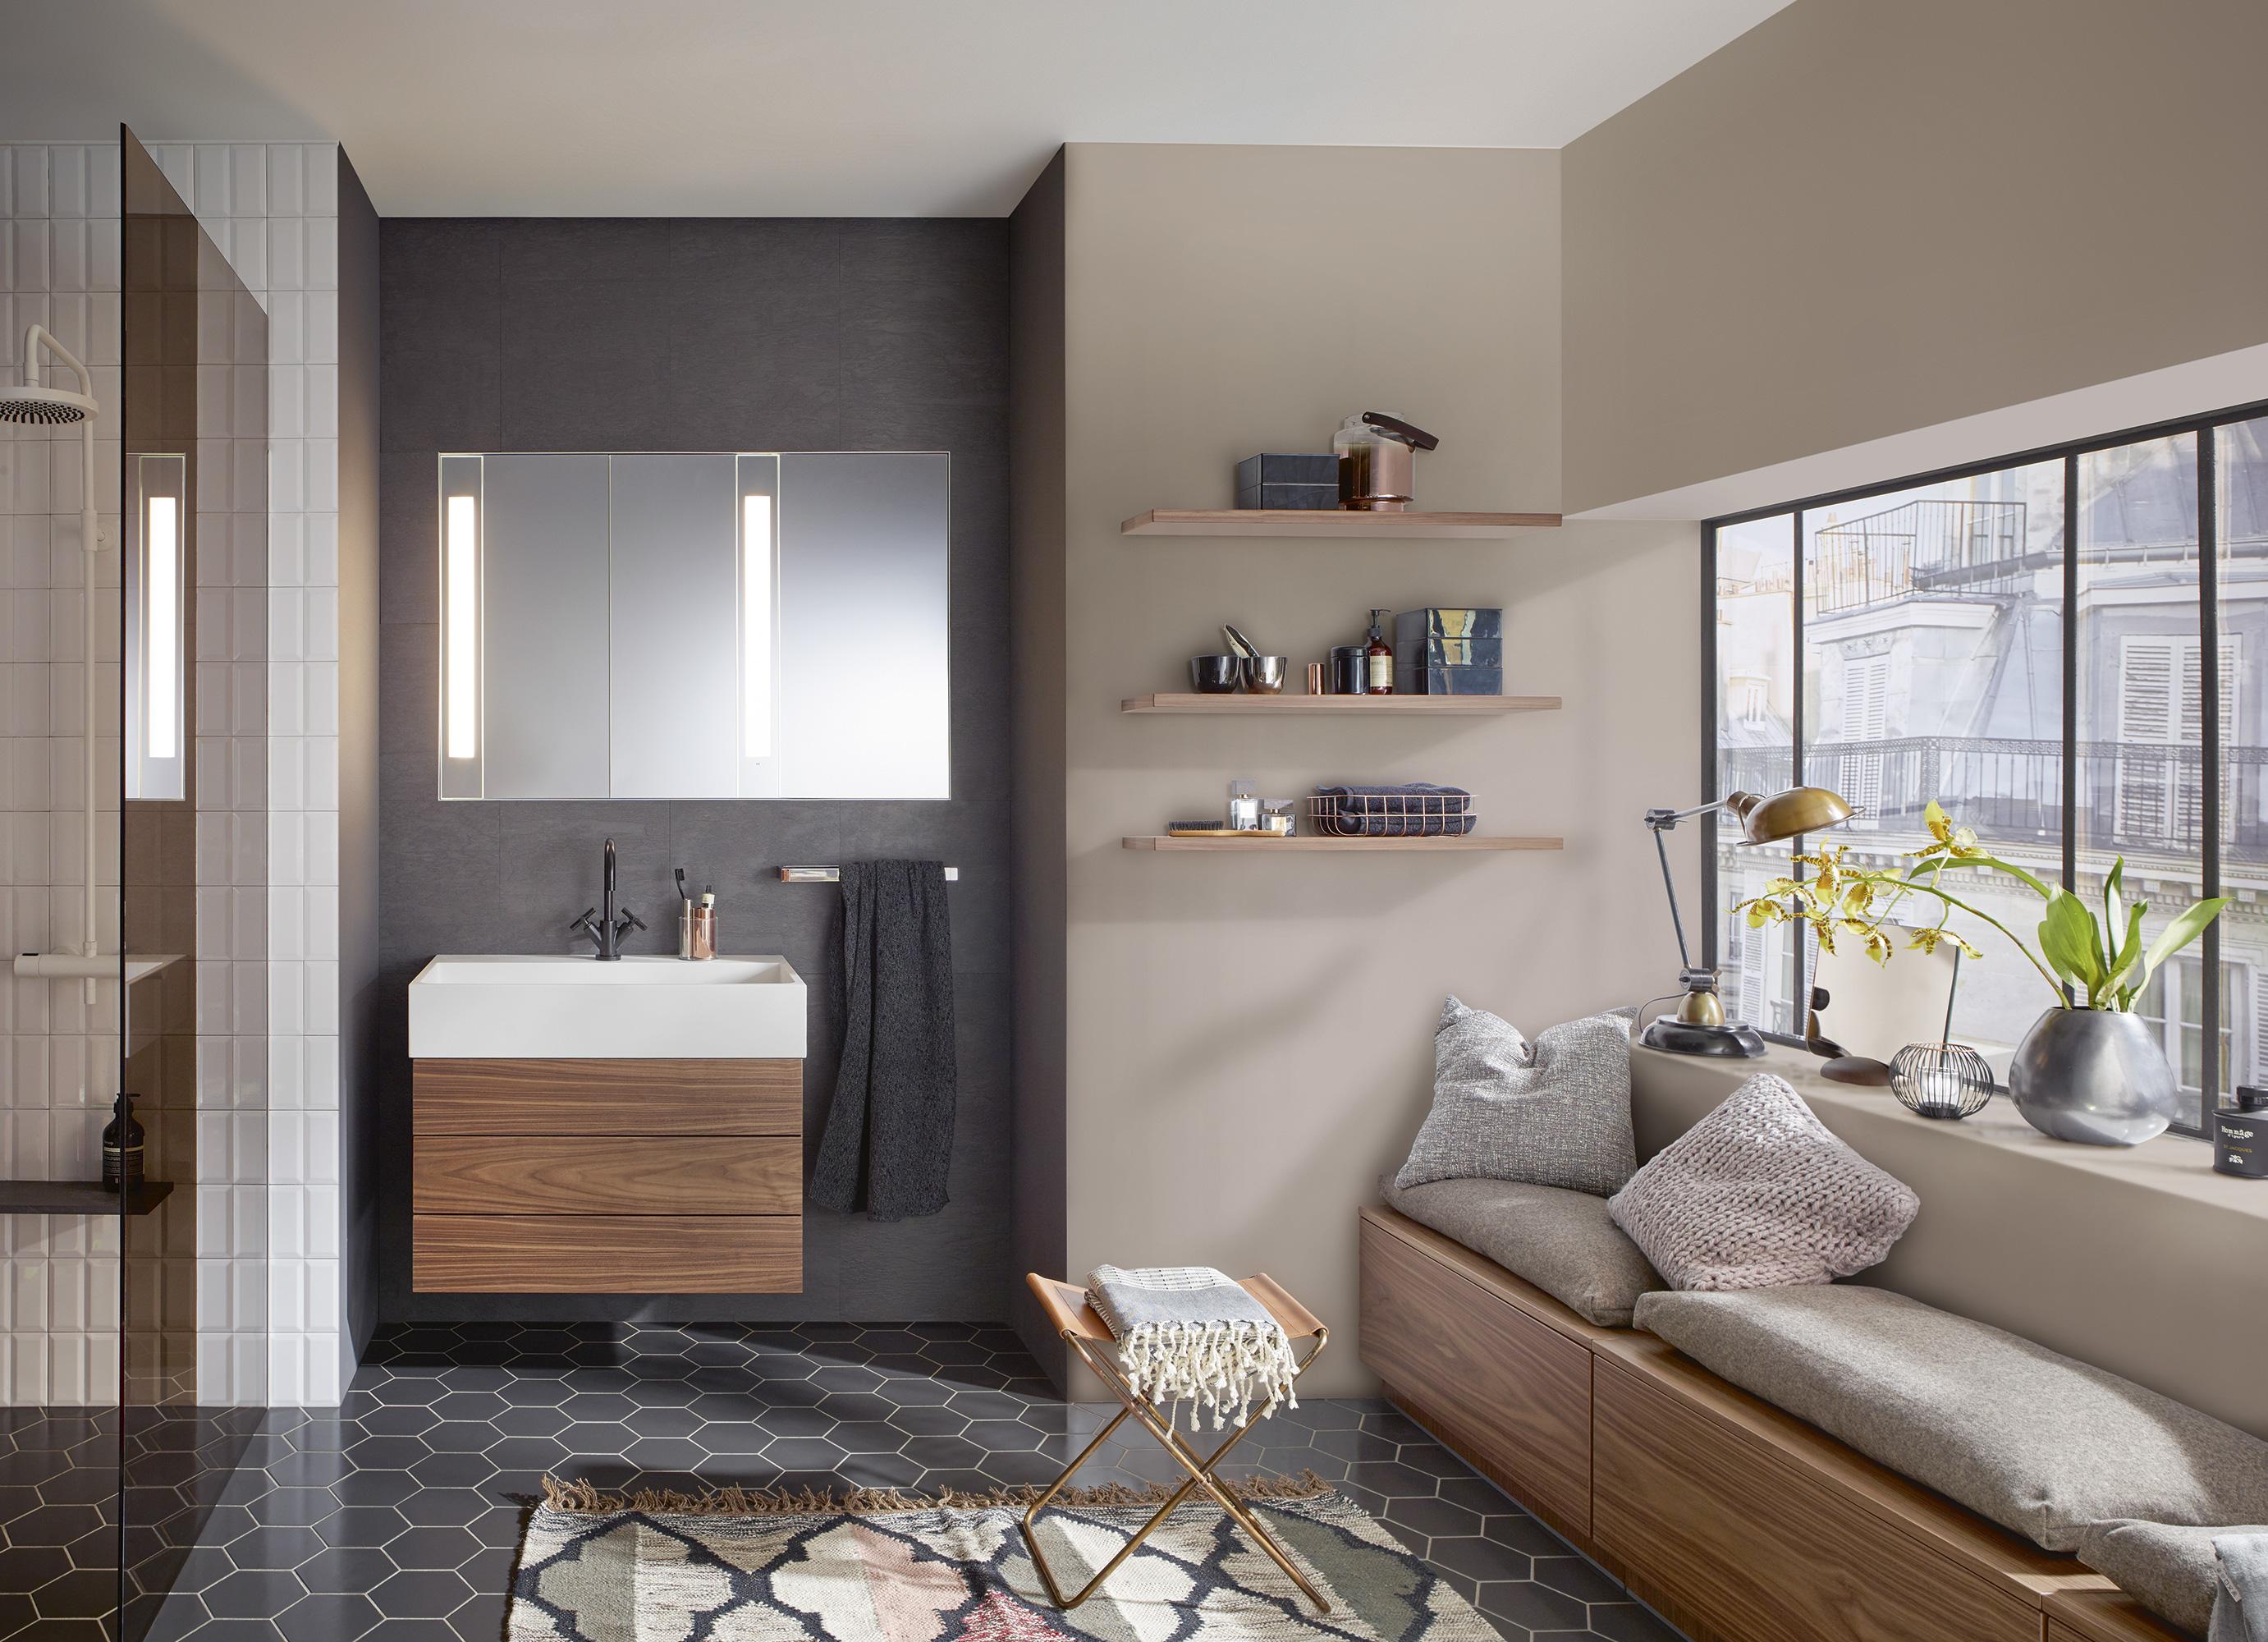 burgbad Crono Badezimmer mit Möbeln in Nussbaum #waschtisch #waschbecken #wandablage #sitzecke #spiegelschrank ©burgbad